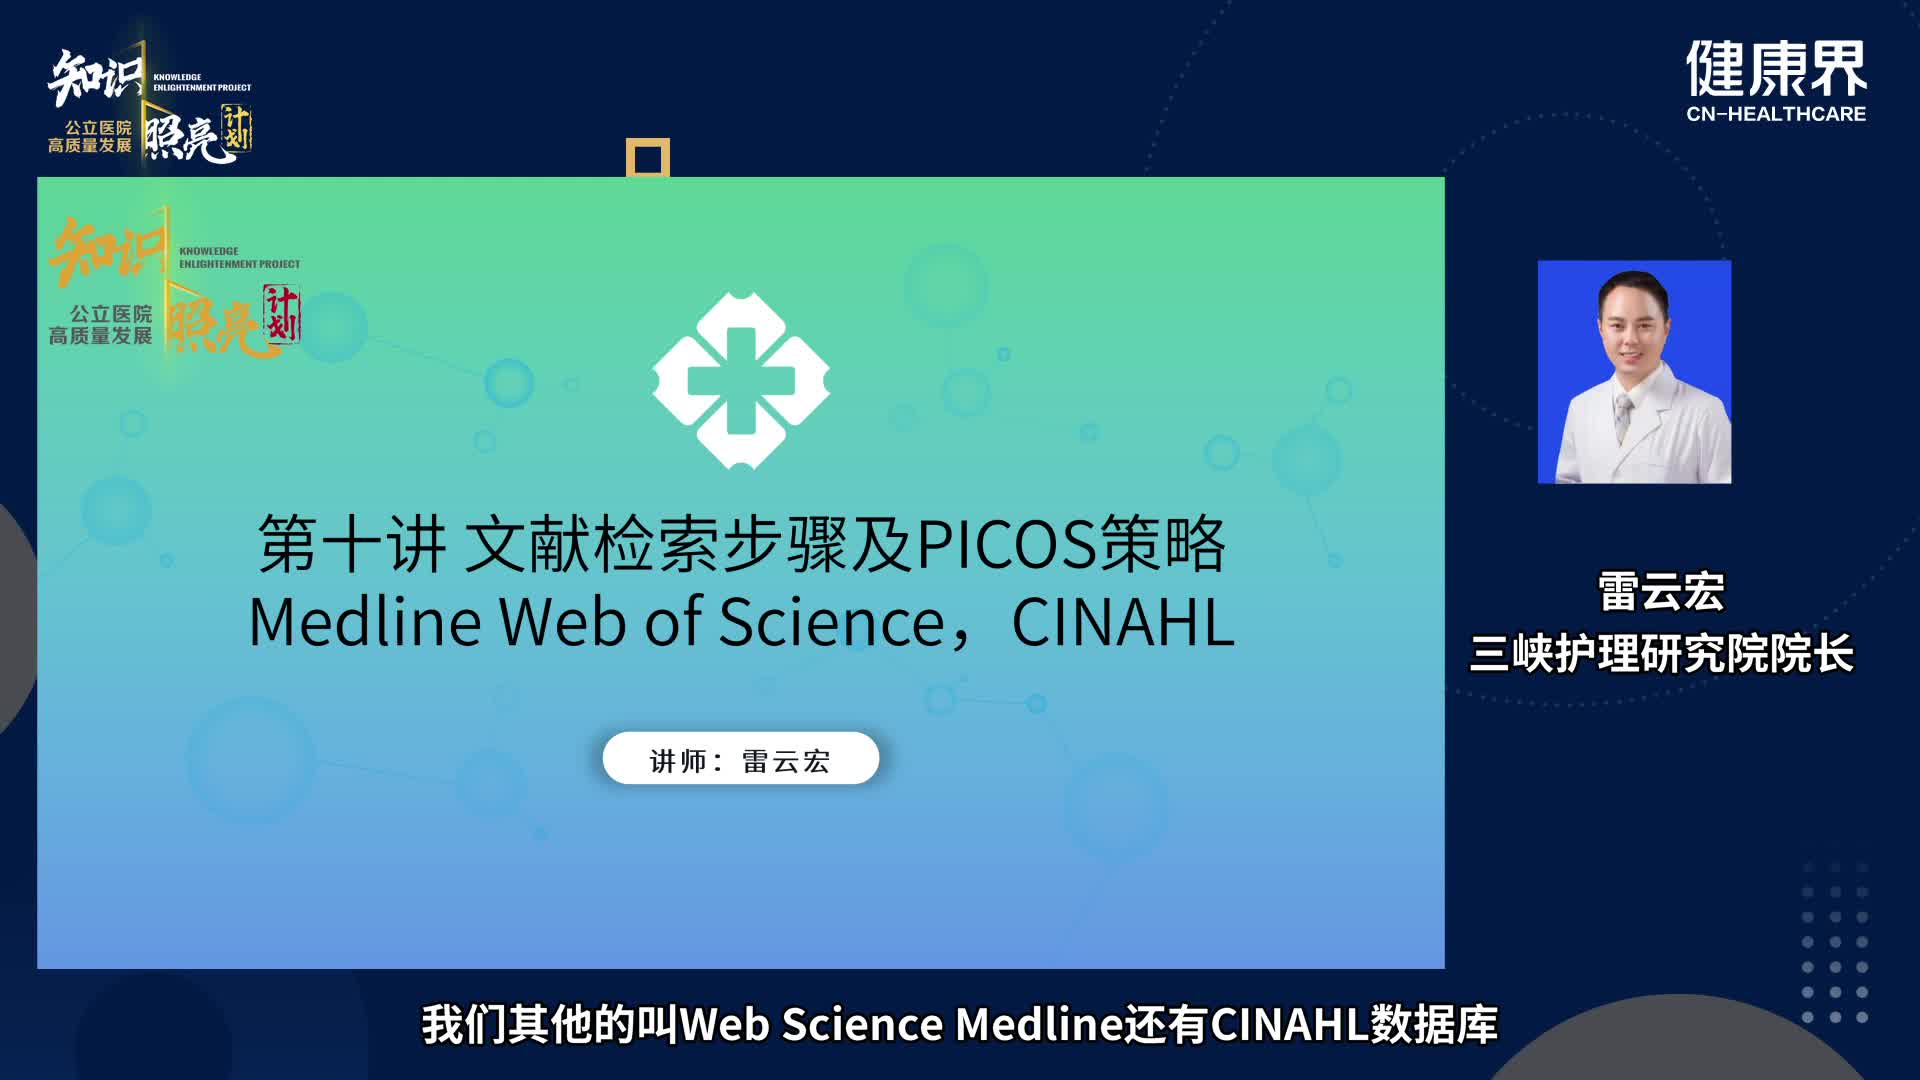 文献检索步骤及PICOS策略Medline， Web of Science，CINAHL